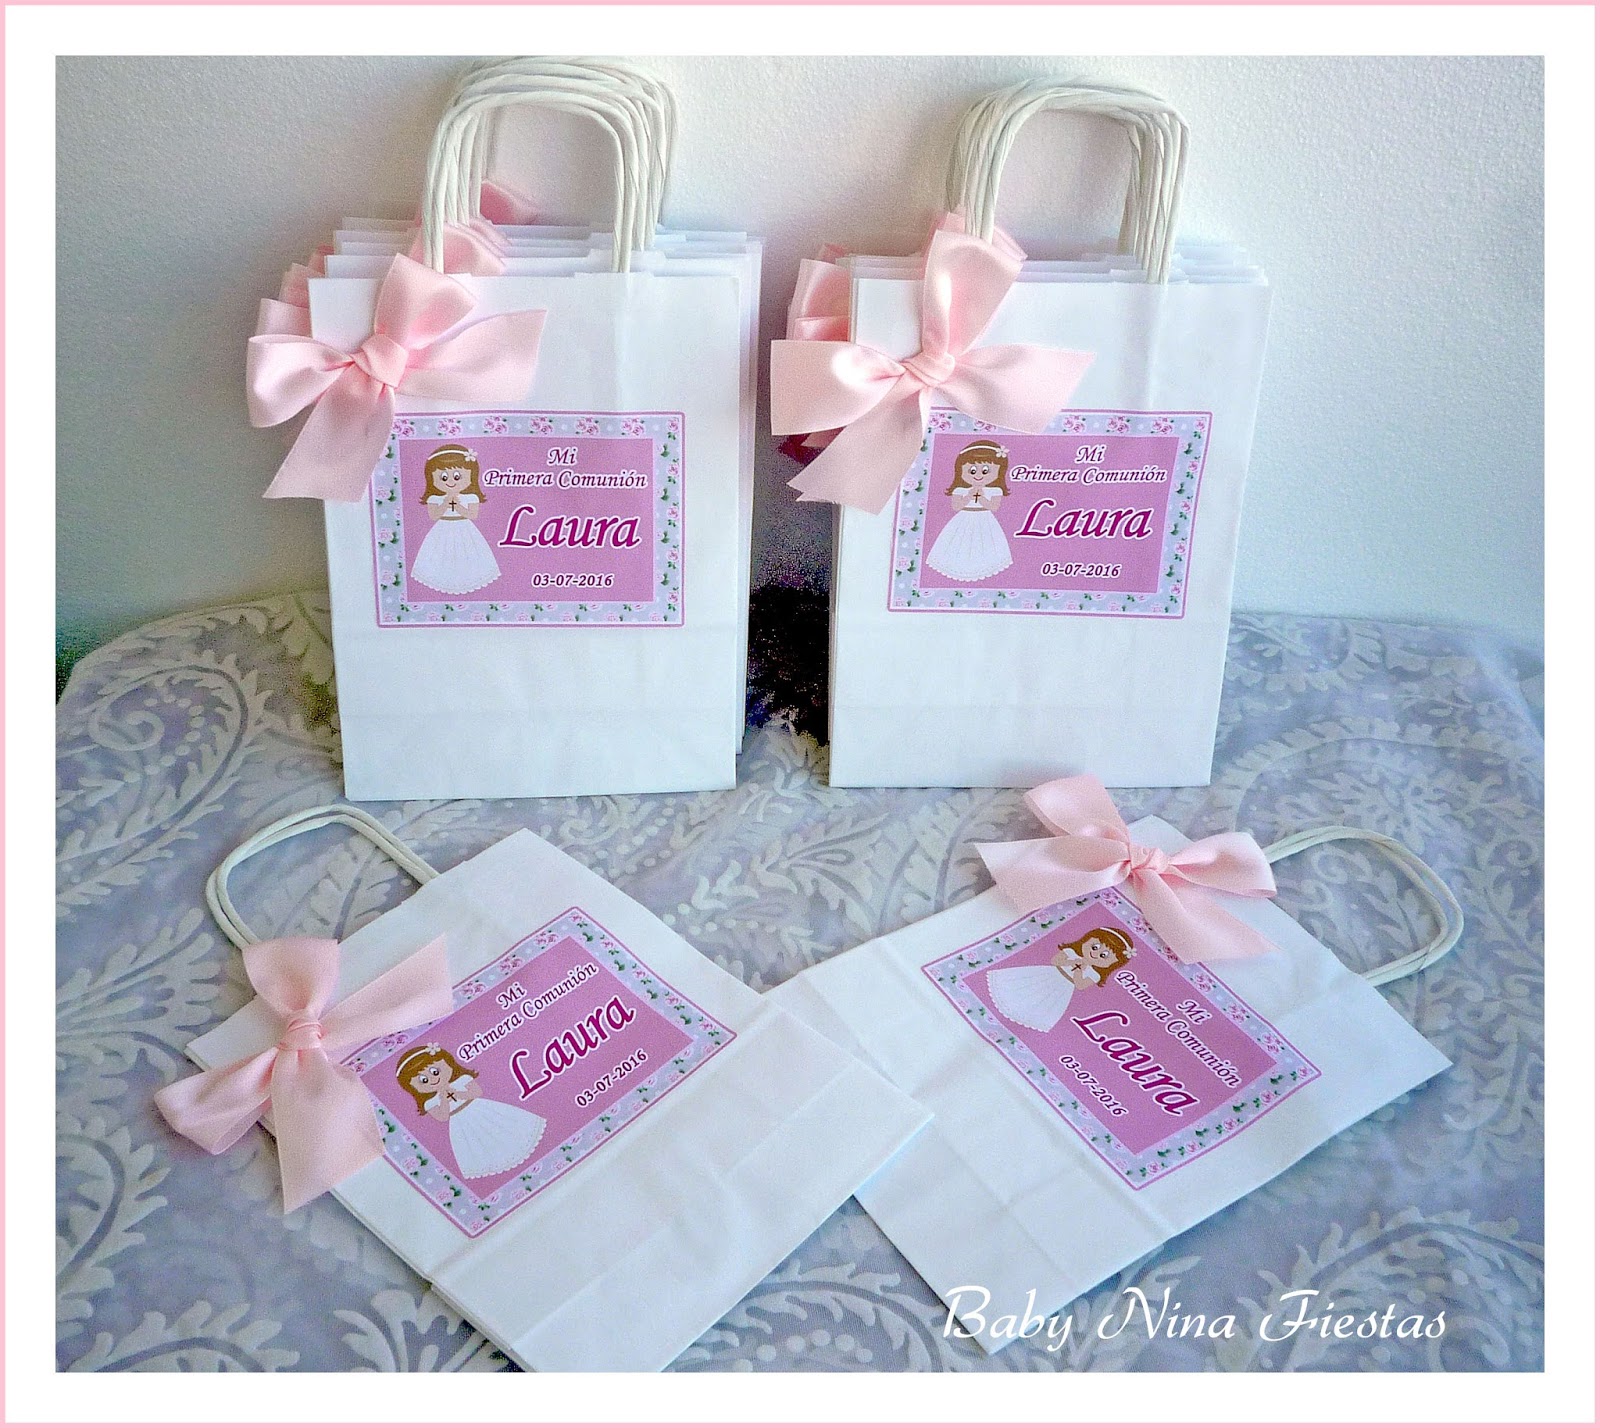 Baby Nina Fiestas: Bolsas personalizadas para las comuniones de Laura y  Claudia